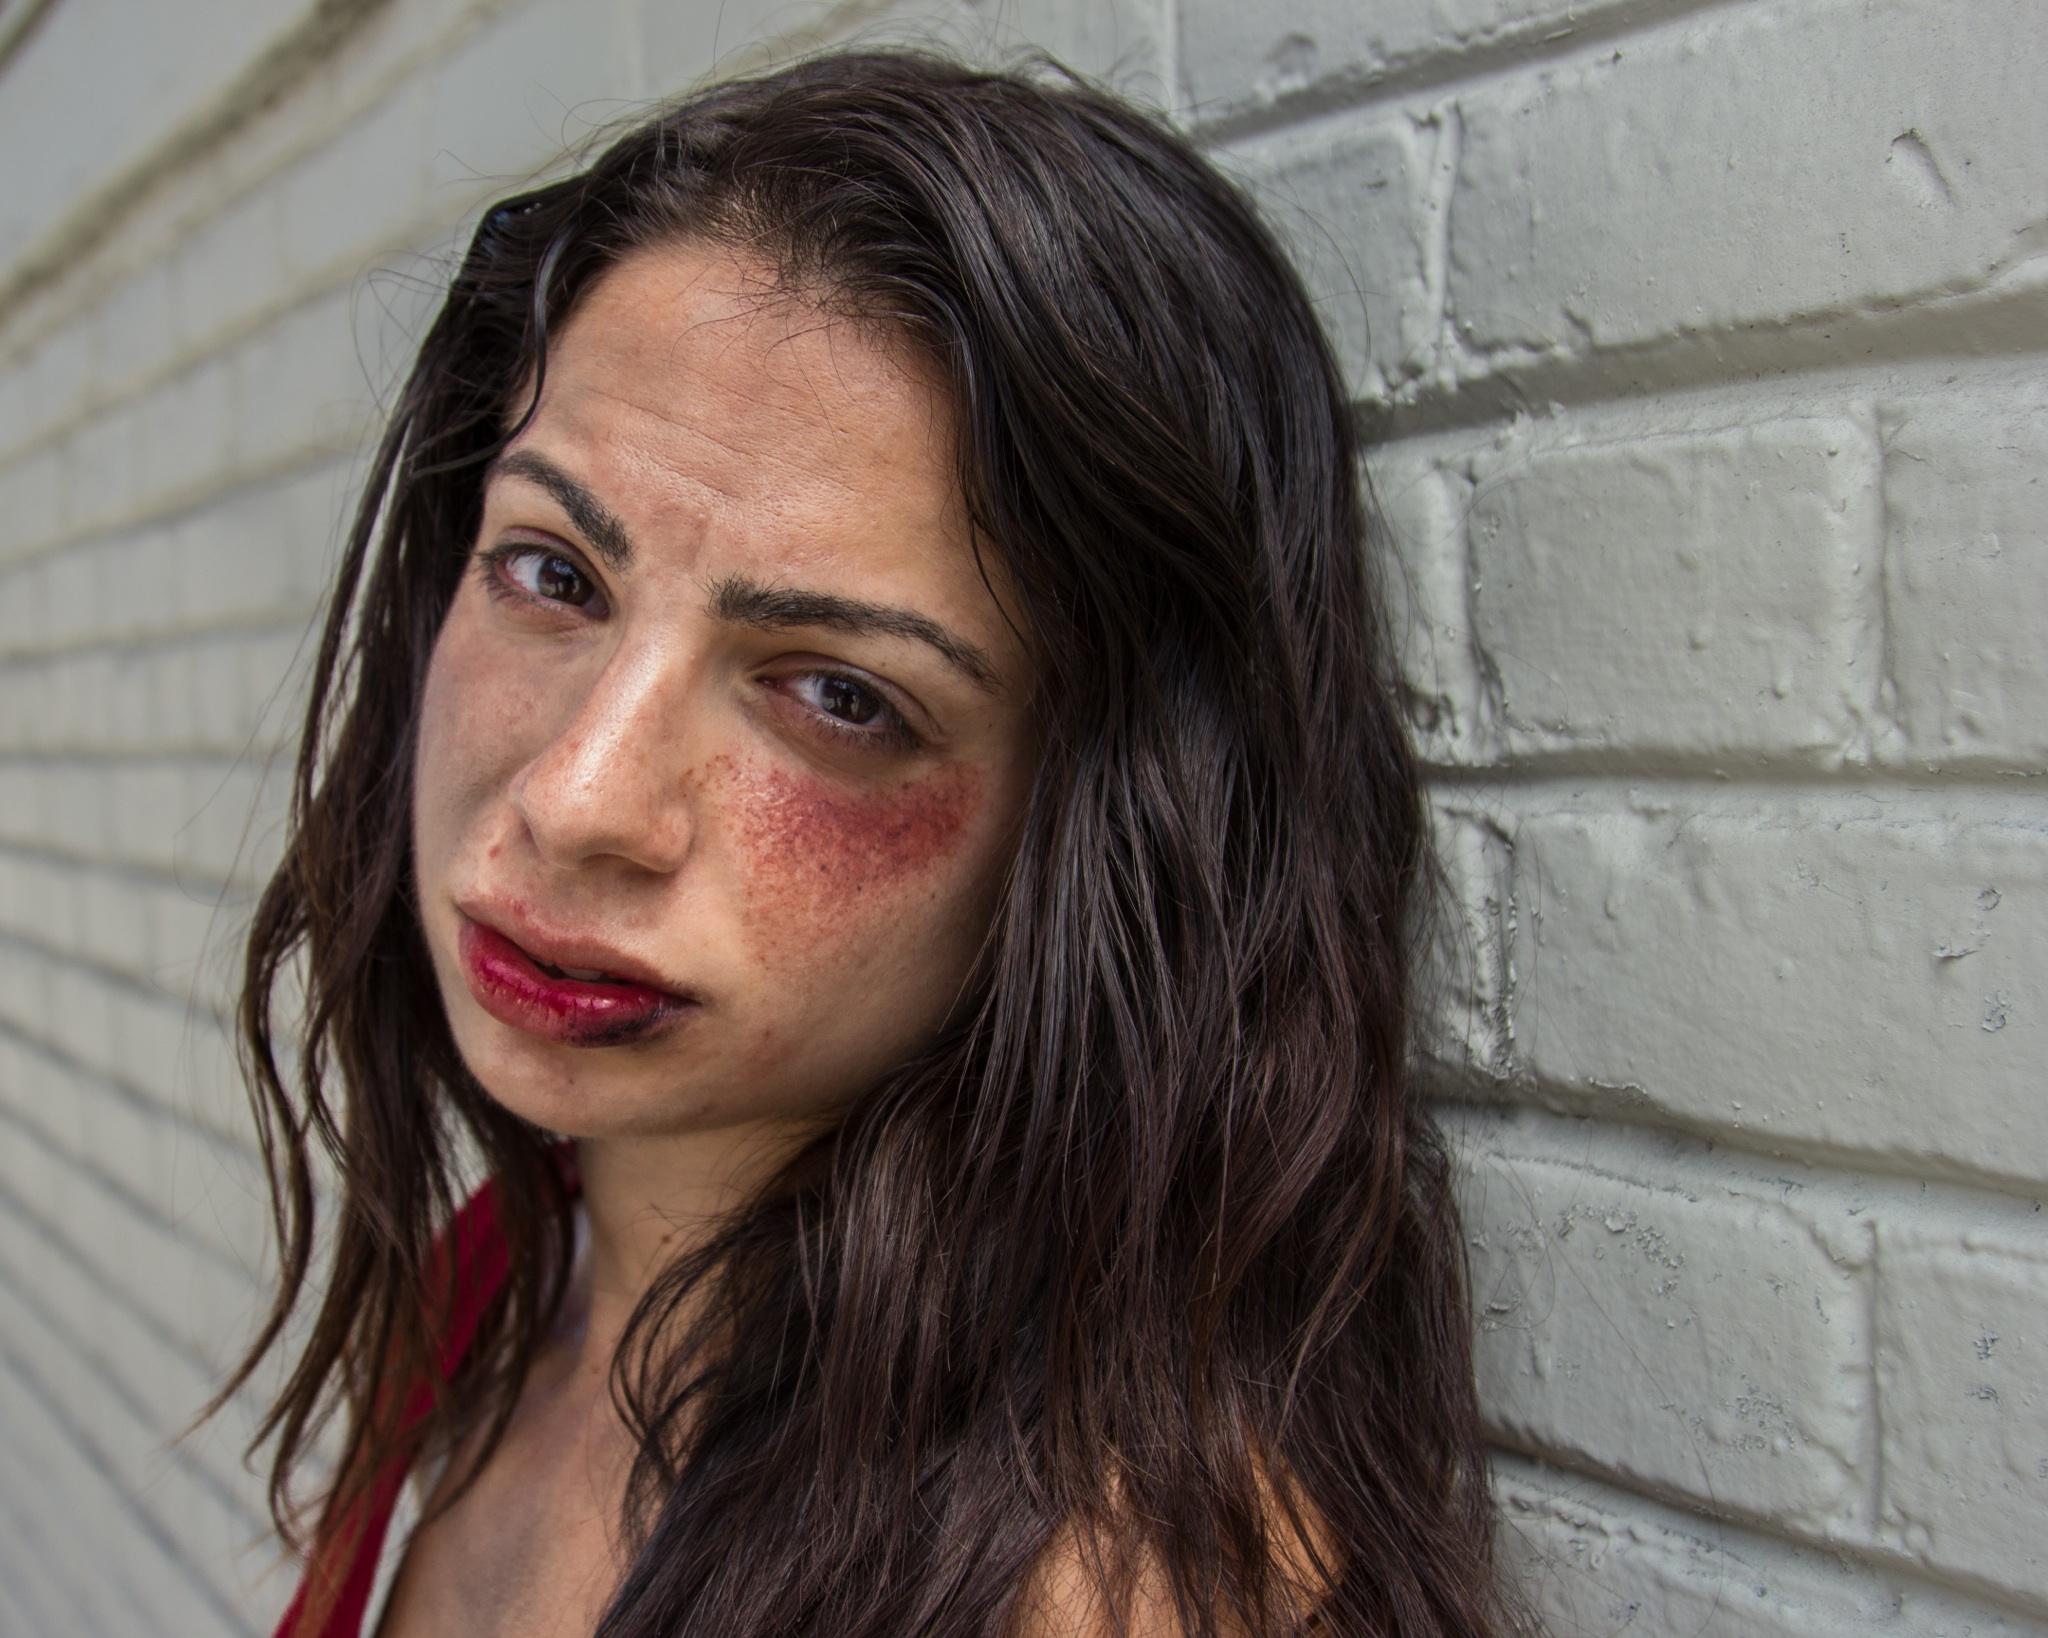 Beat up homeless girl in 